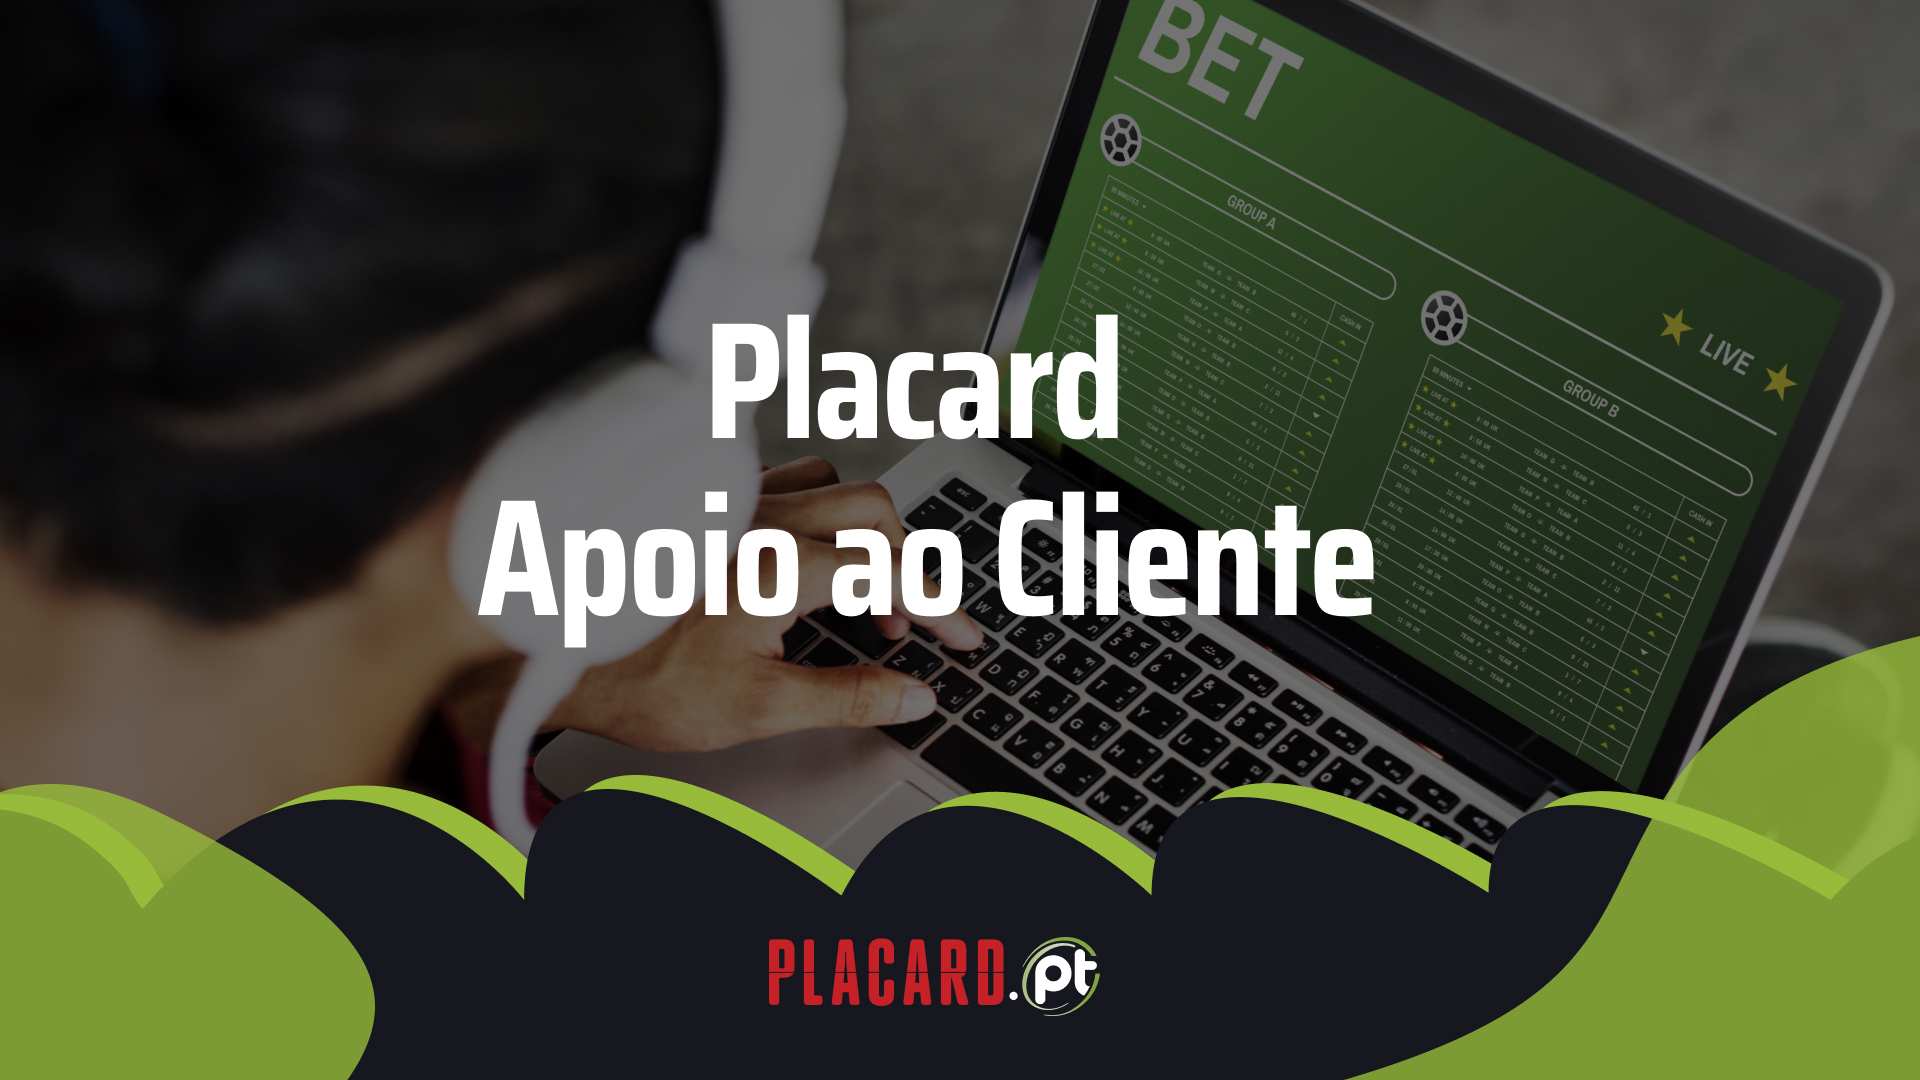 Placard apoio ao cliente - Placard Apoio ao Cliente: Como Contactar a Operadora